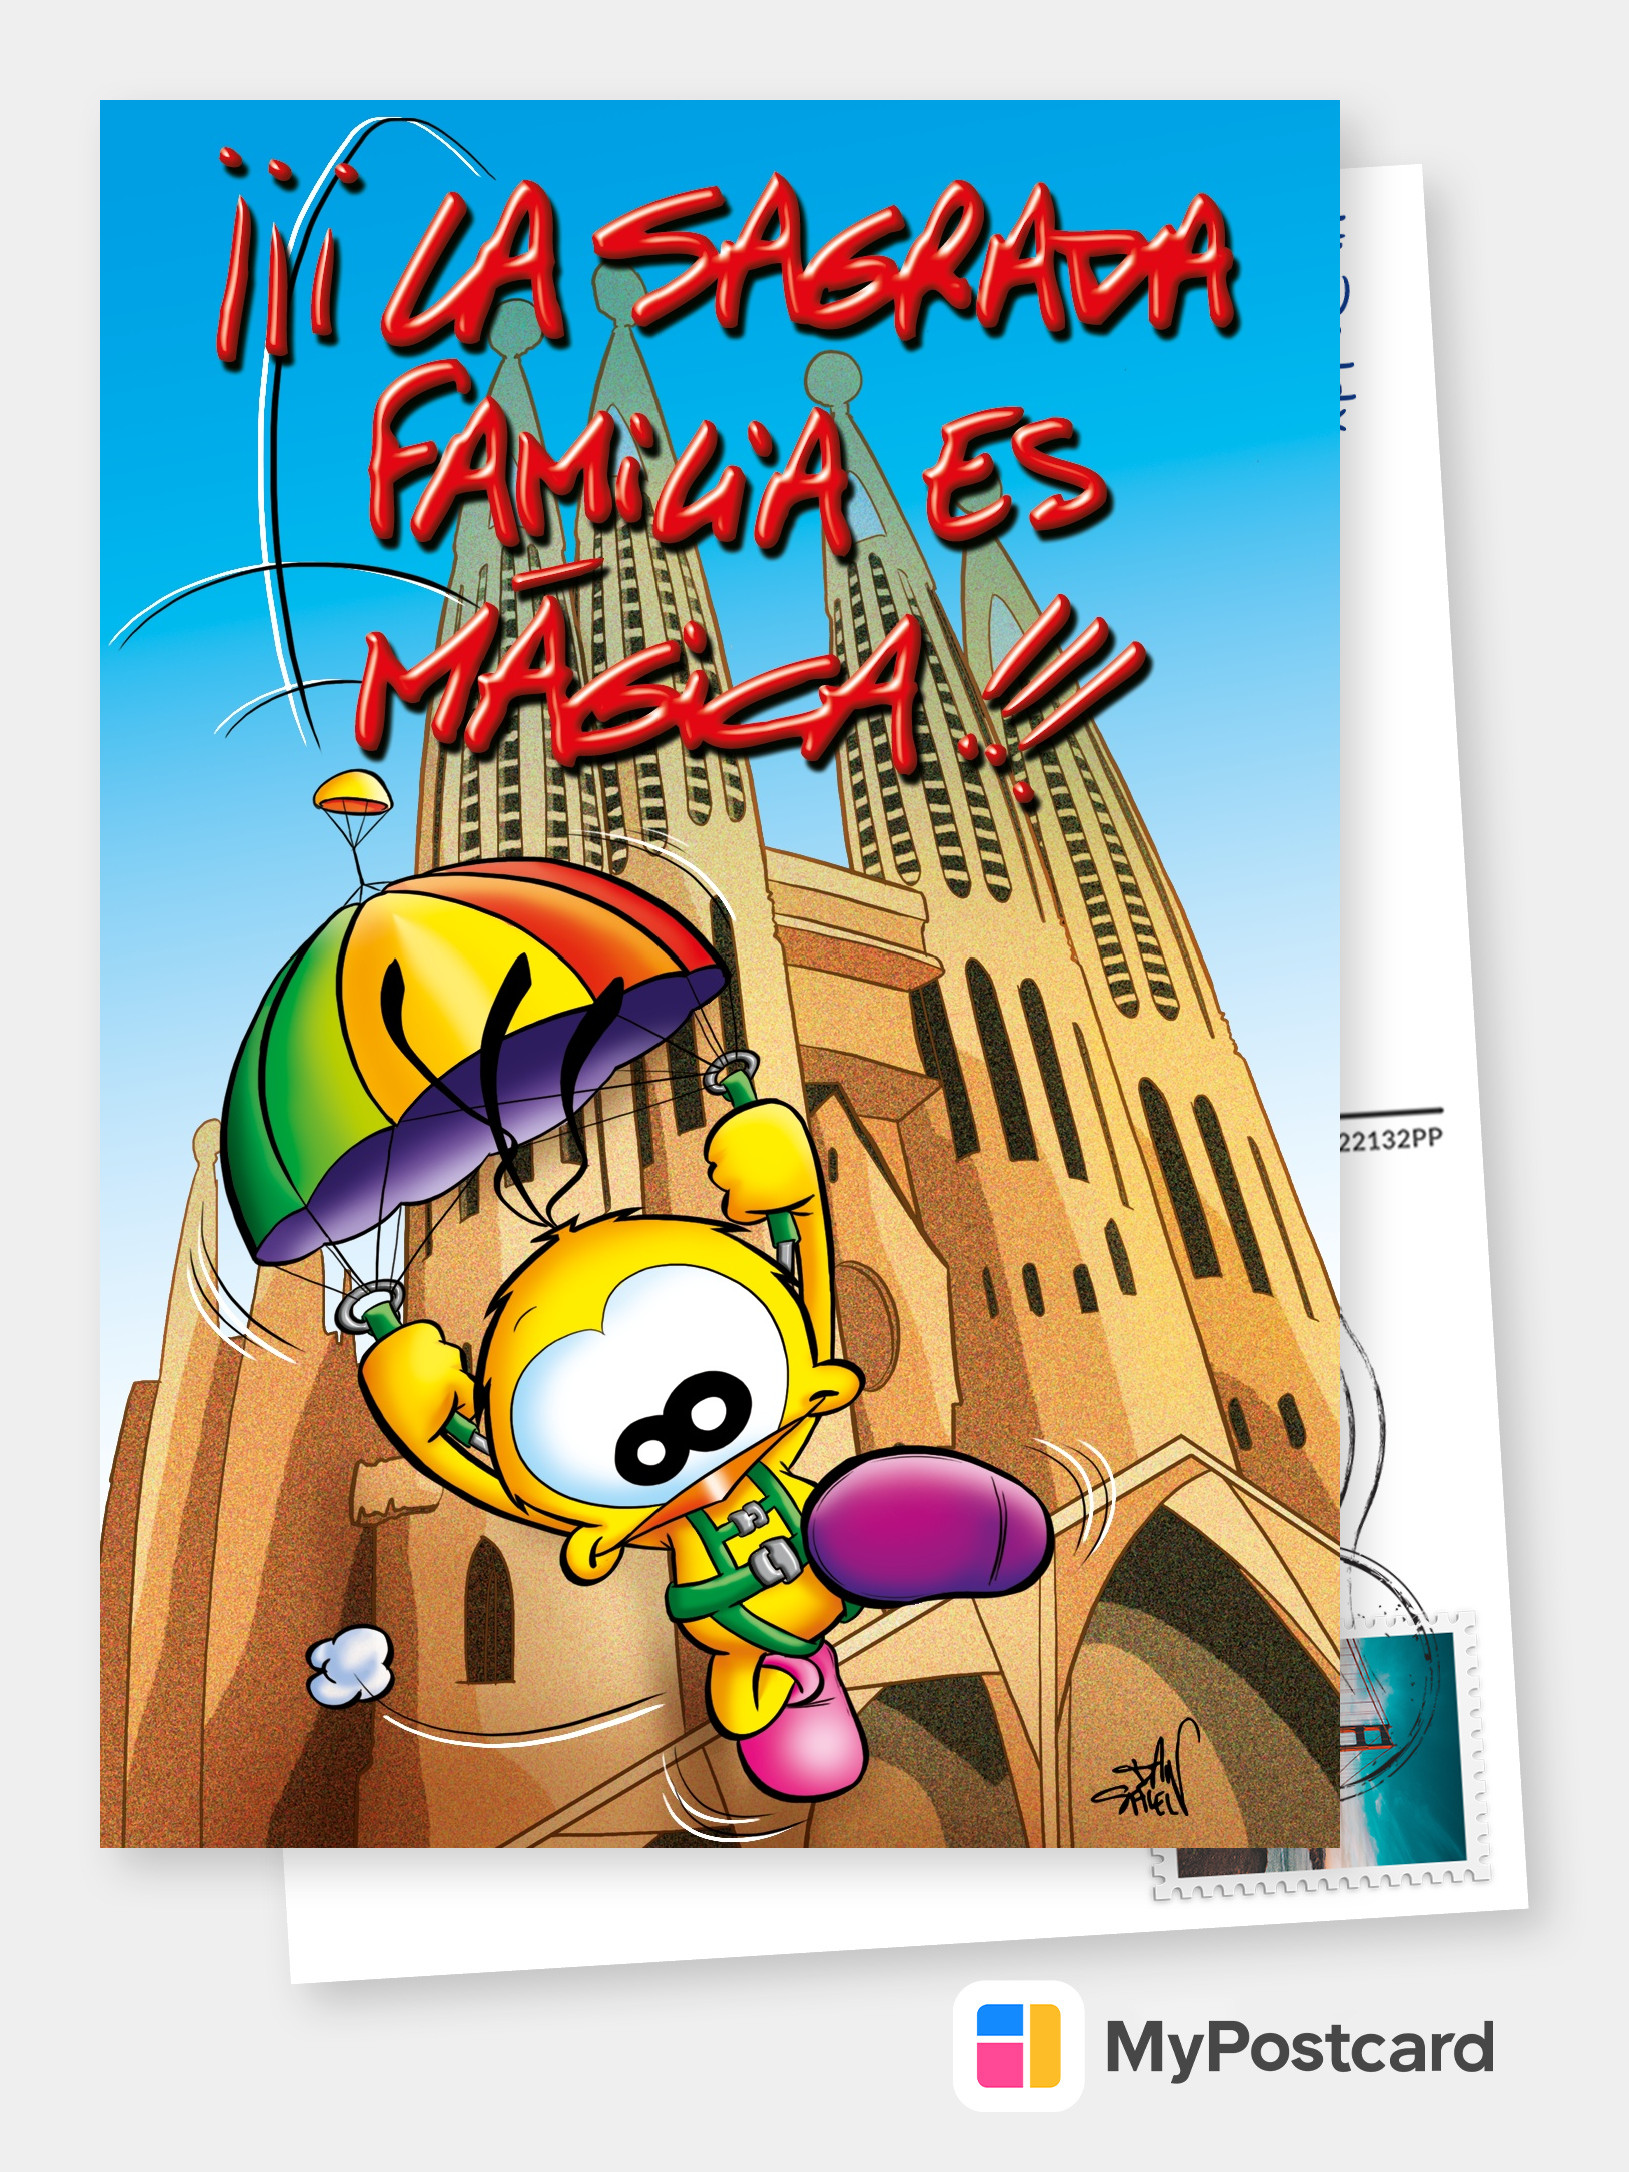 Le Piaf La Sagrada Familia Es Magica Comic Cartoon Cards Send Real Postcards Online